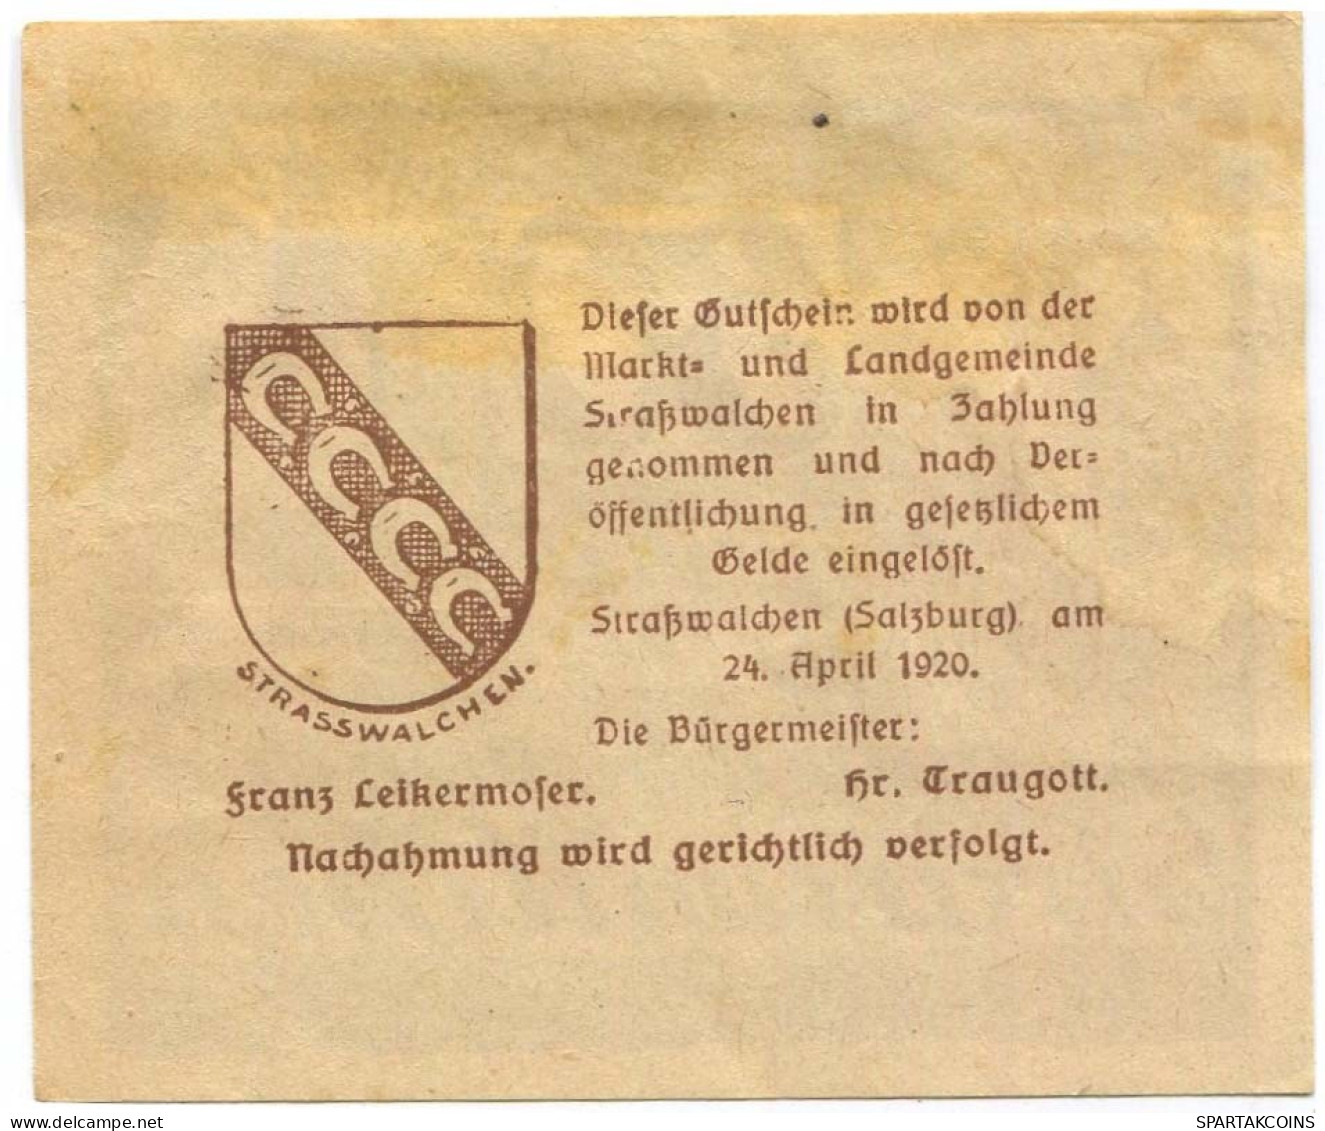 50 HELLER 1920 Stadt STRASSWALCHEN Salzburg Österreich Notgeld Papiergeld Banknote #PL811 - [11] Emisiones Locales